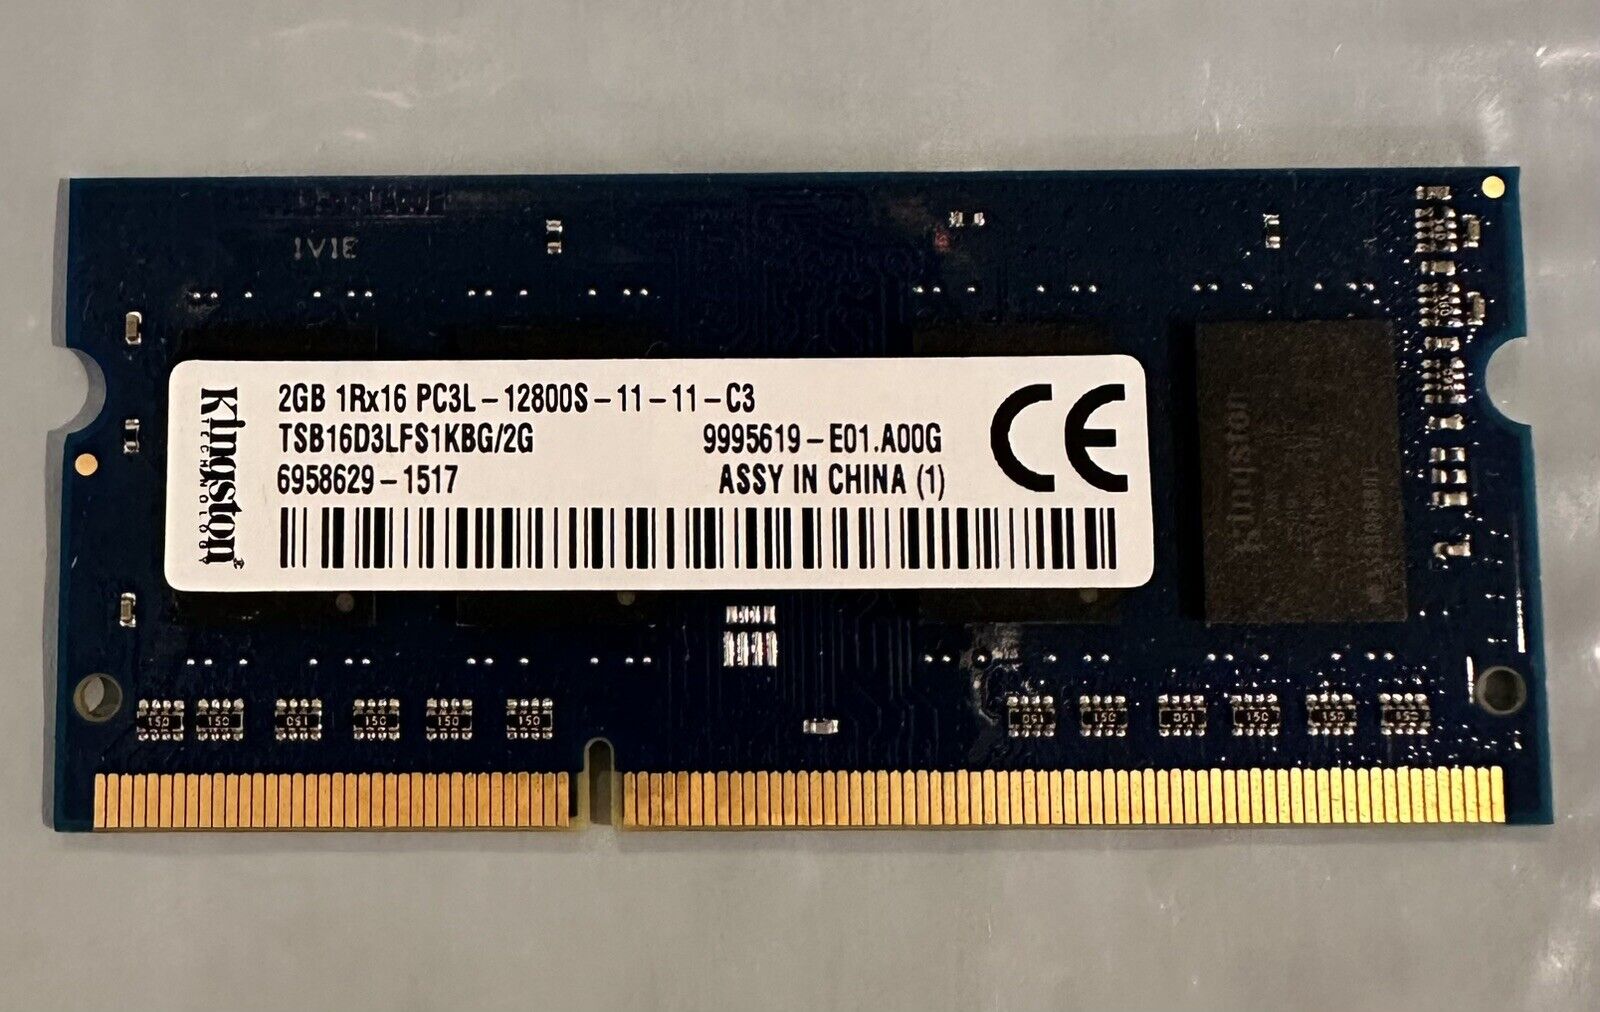 Kingston 2GB 1Rx16 PC3L-12800S DDR3-1600MHz Laptop Memory TSB16D3LFS1KBG/2G